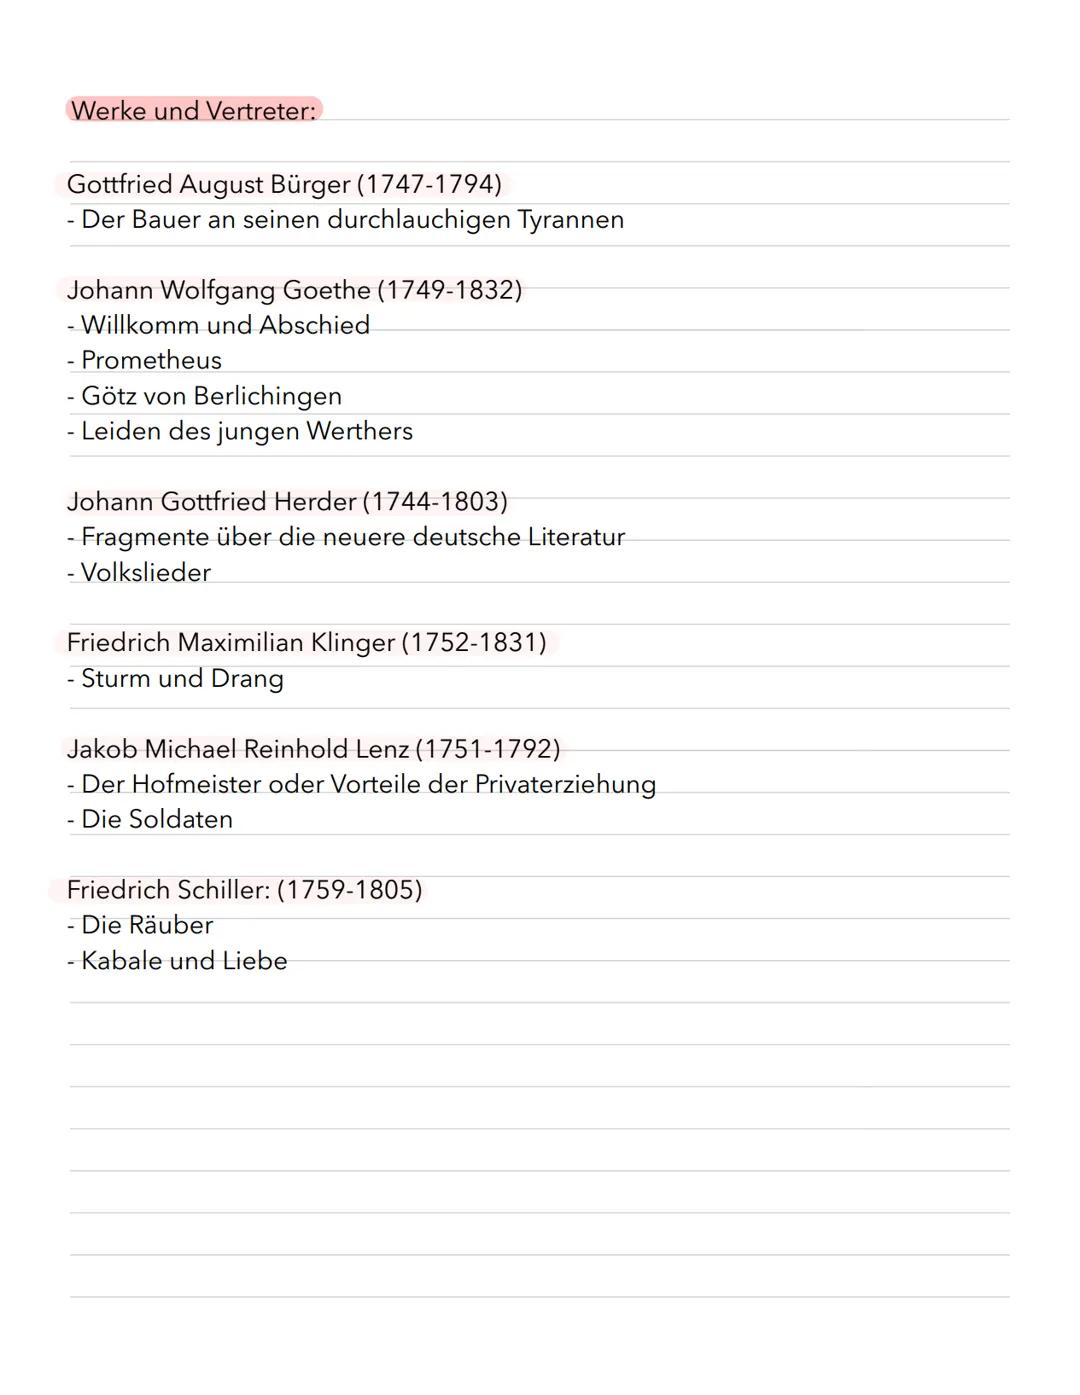 Aufklärung
(1720-1785)
-
Sturm und Drang
Sturm und Drang
(1767-1785)
Begri'ff:
Begriff geht auf Komödie ,,Sturm und Drang" von Friedrich Max